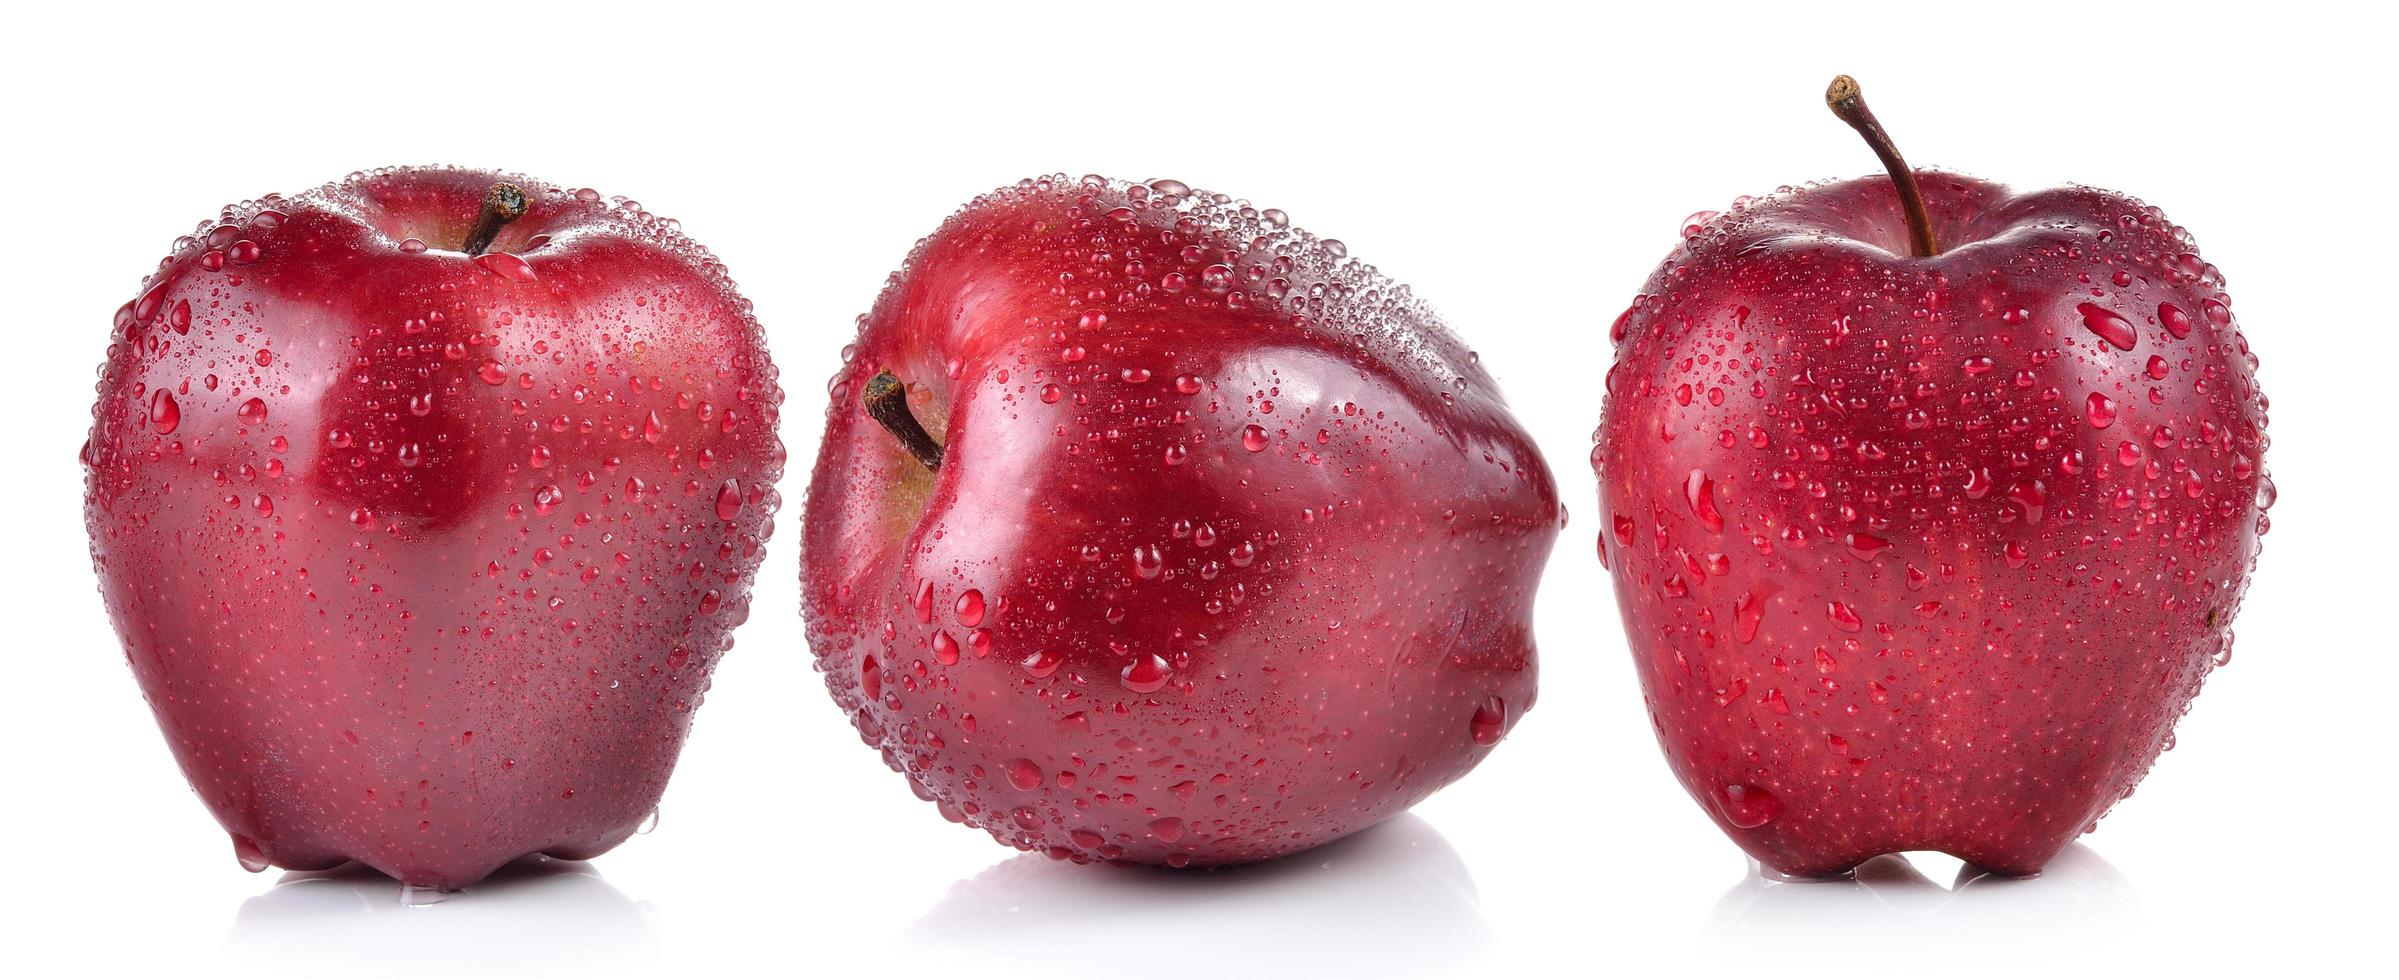 rode appel met waterdruppels op witte achtergrond foto